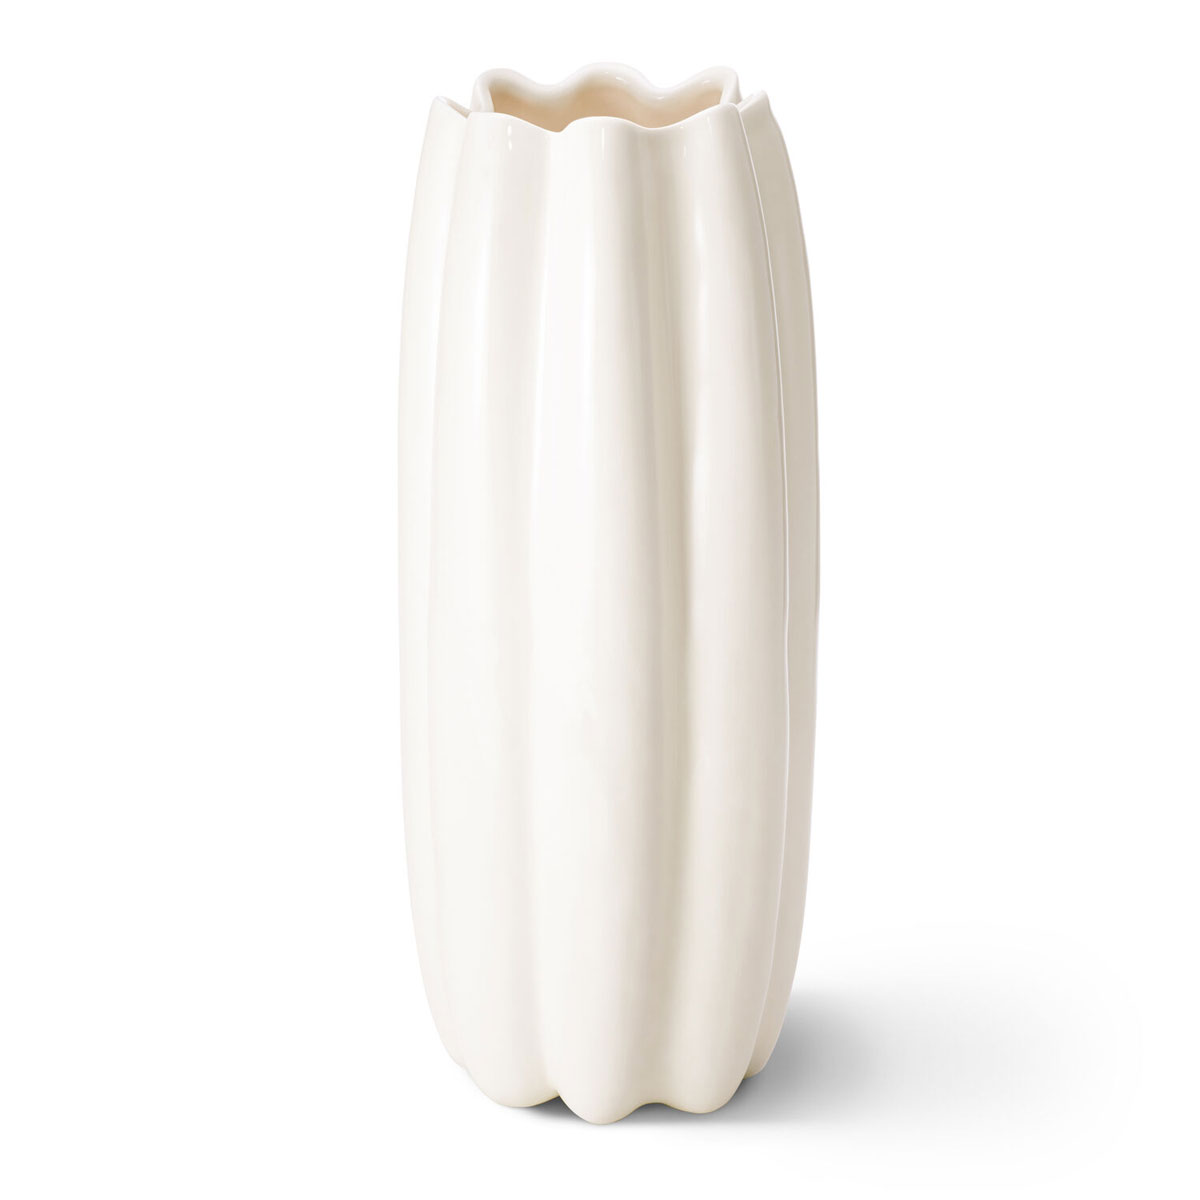 Aerin 16" Mirabelle Vase, Cream